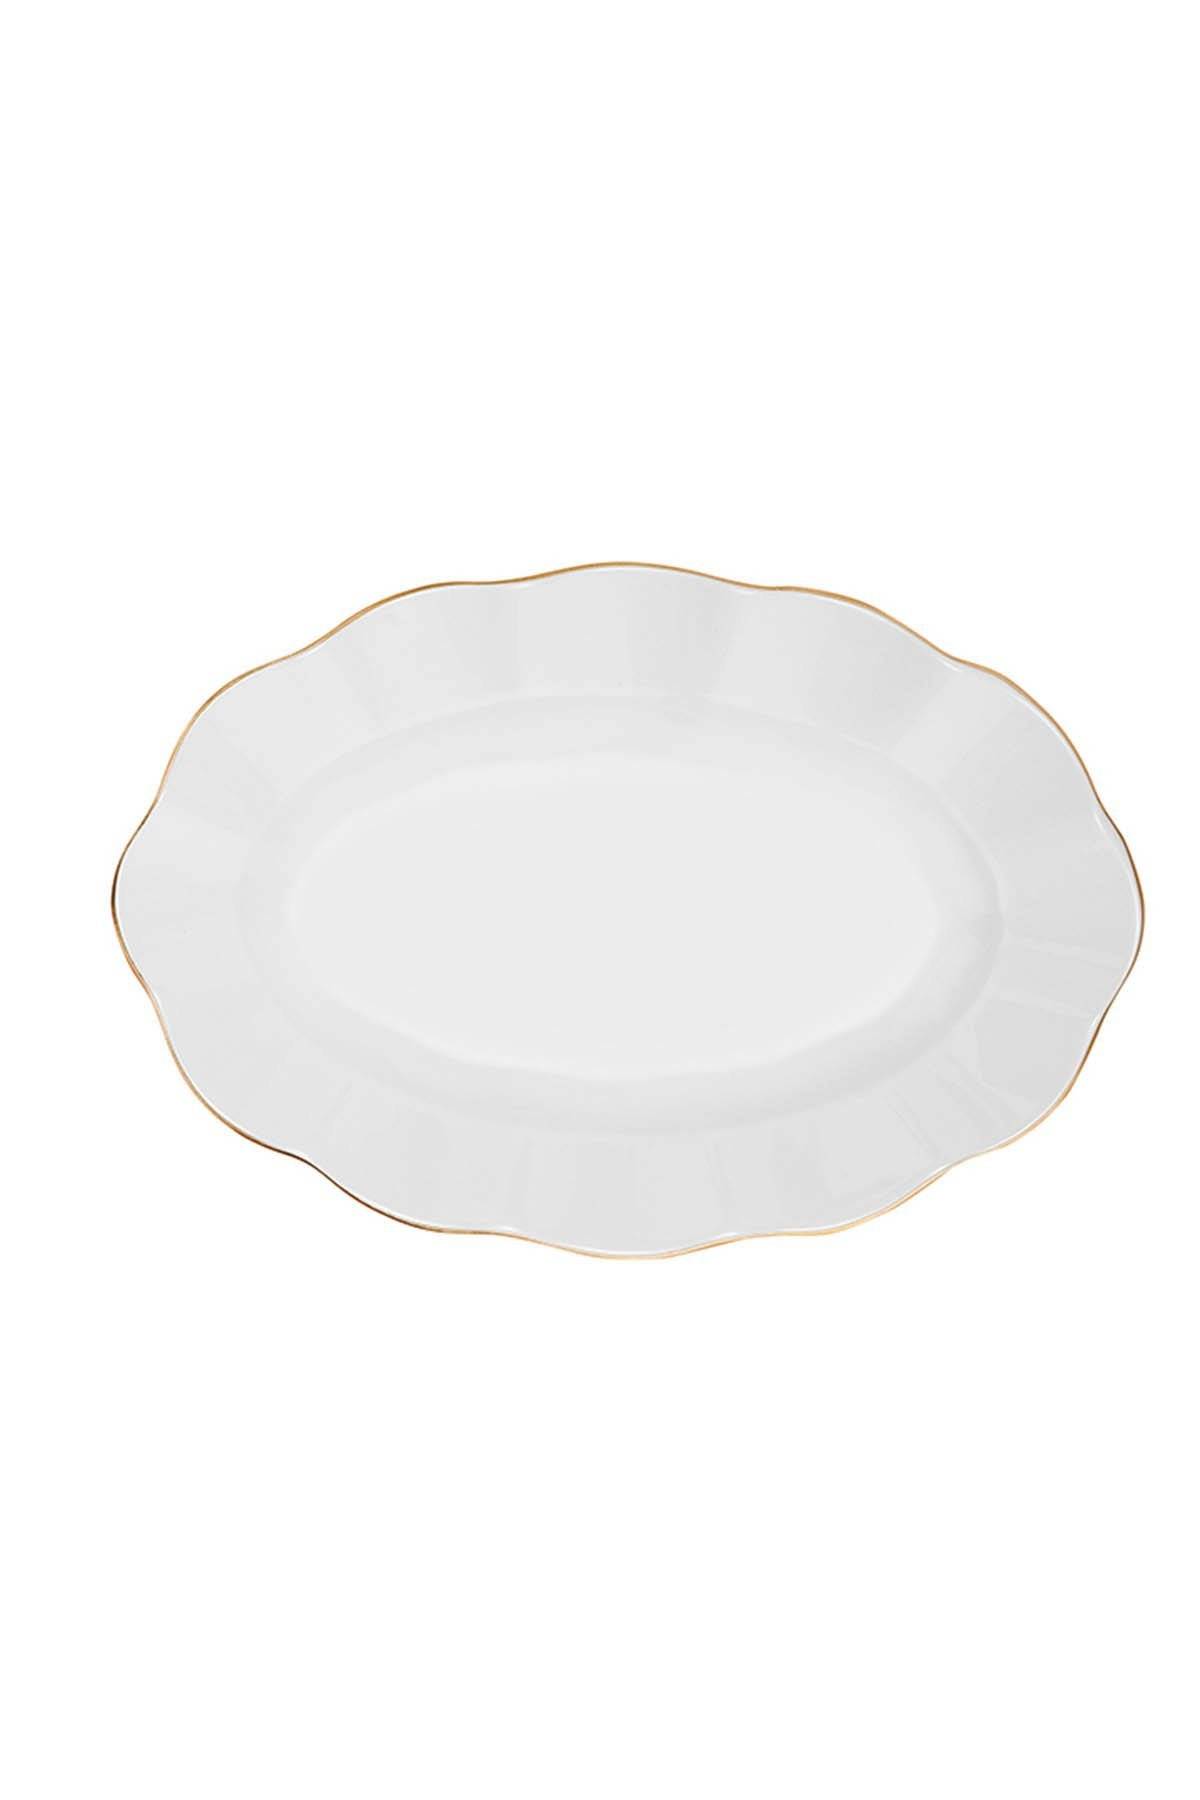 Service de table complet 24 pièces Avouta 100% Porcelaine Blanc